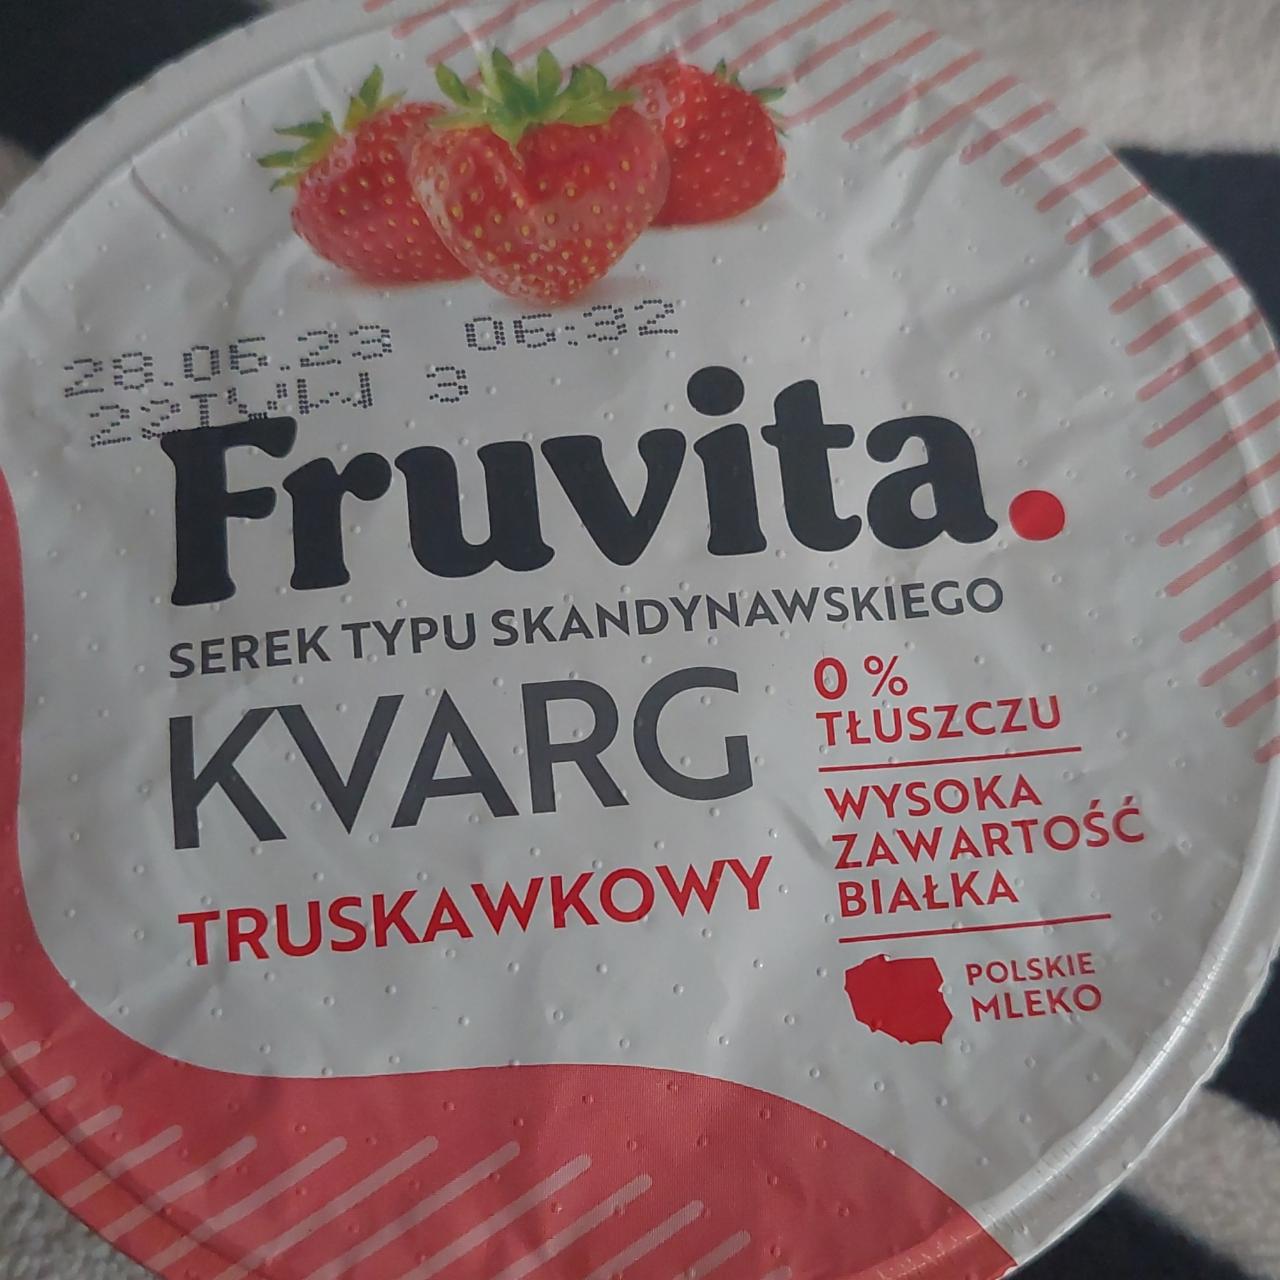 Zdjęcia - Serek typu skandynawskiego Kvarg truskawkowy Fruvita